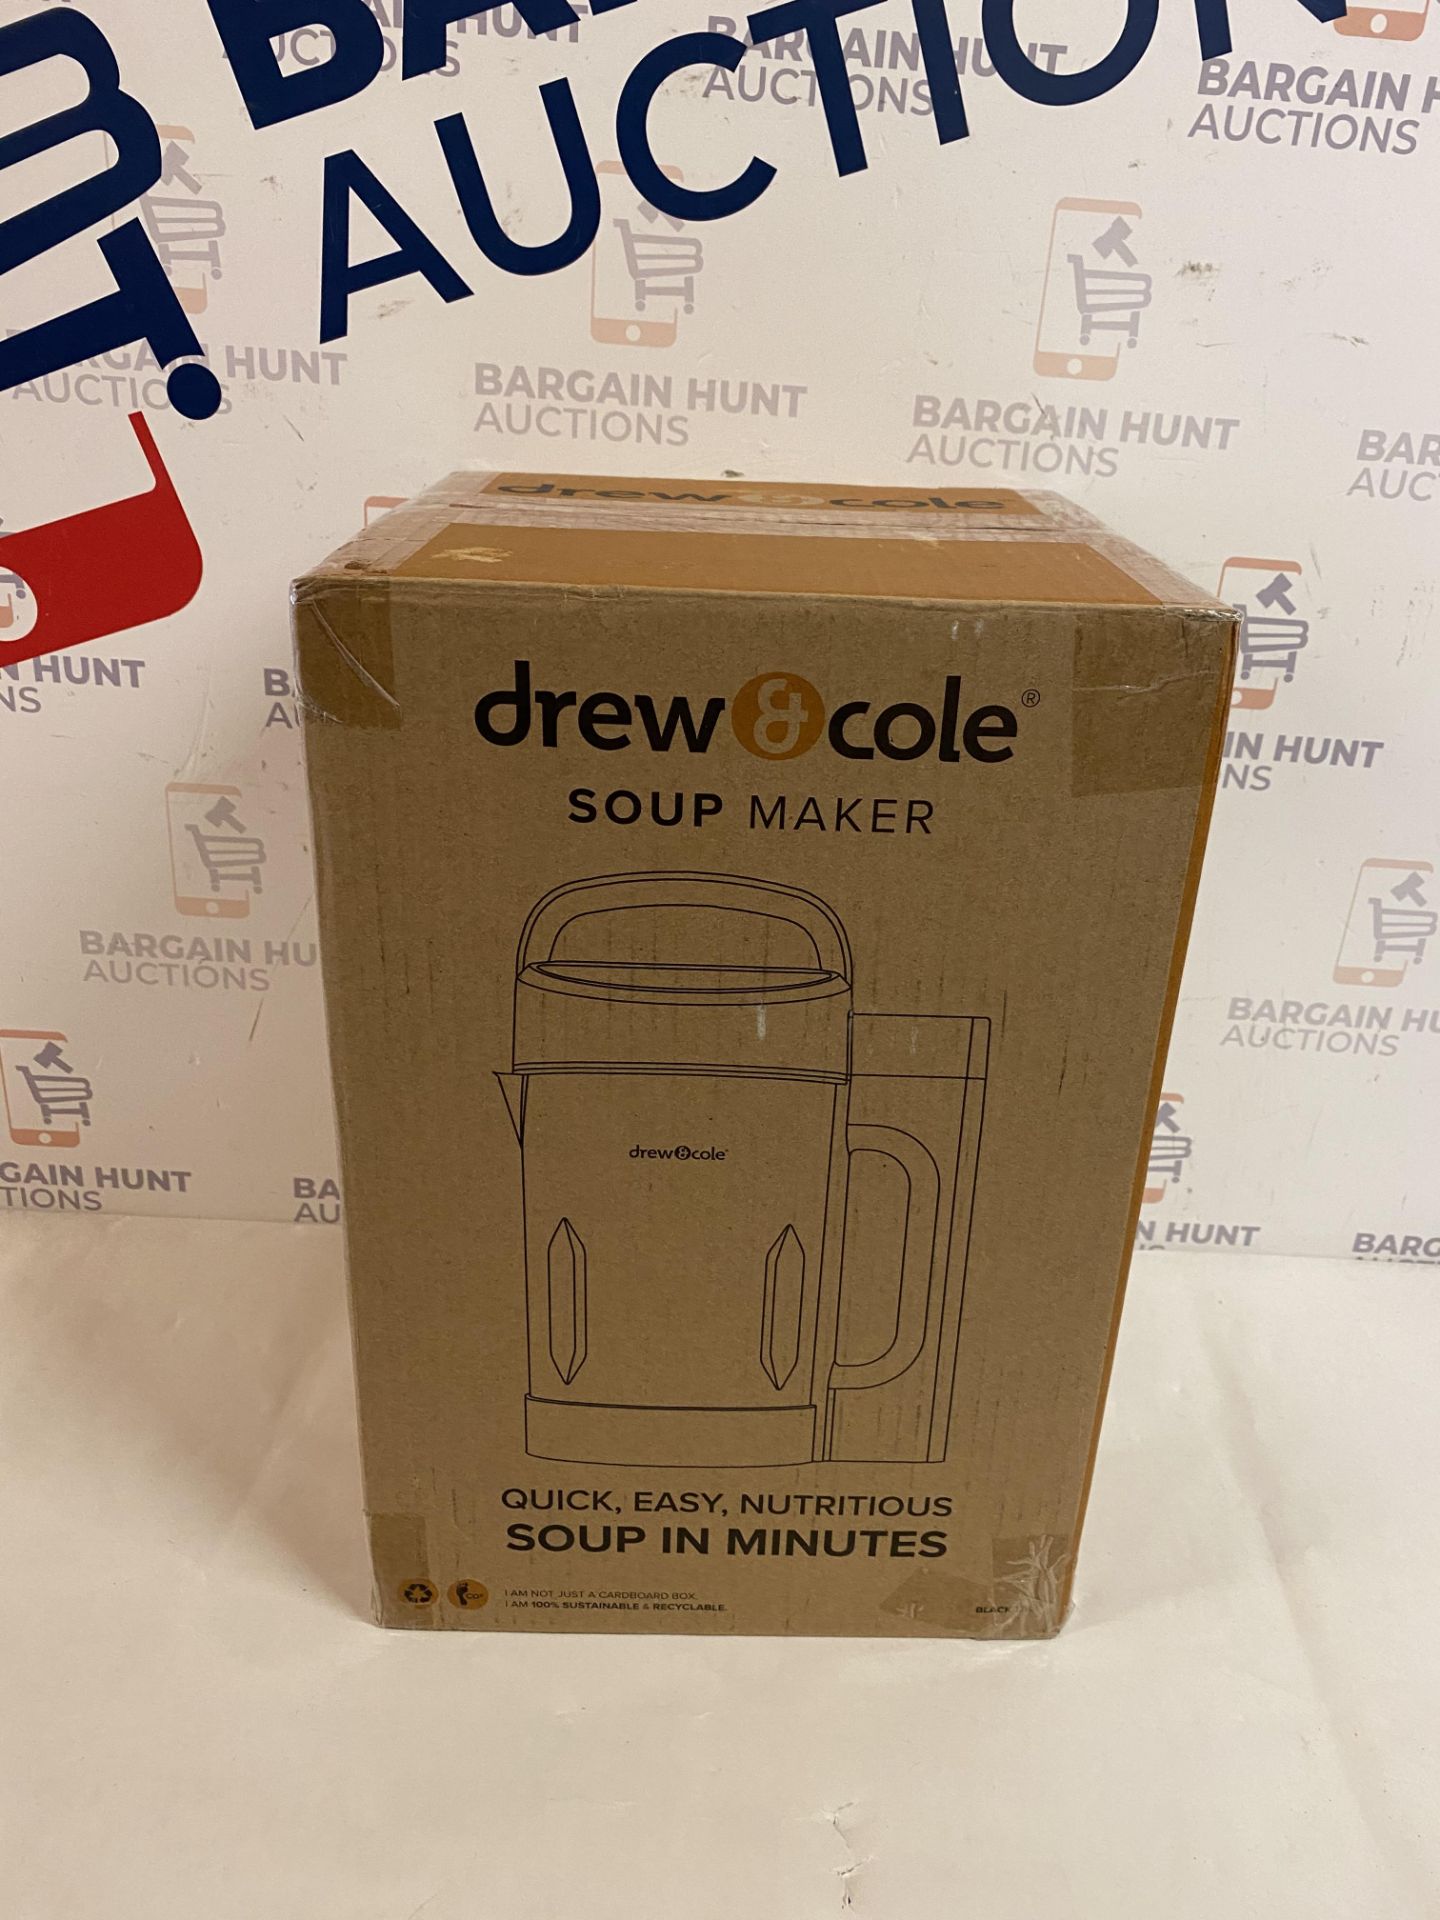 | 1x | Drew&Cole Soup Maker 1.6L - Black | Refurbished | No Online Resale | SKU 5060541516885 |